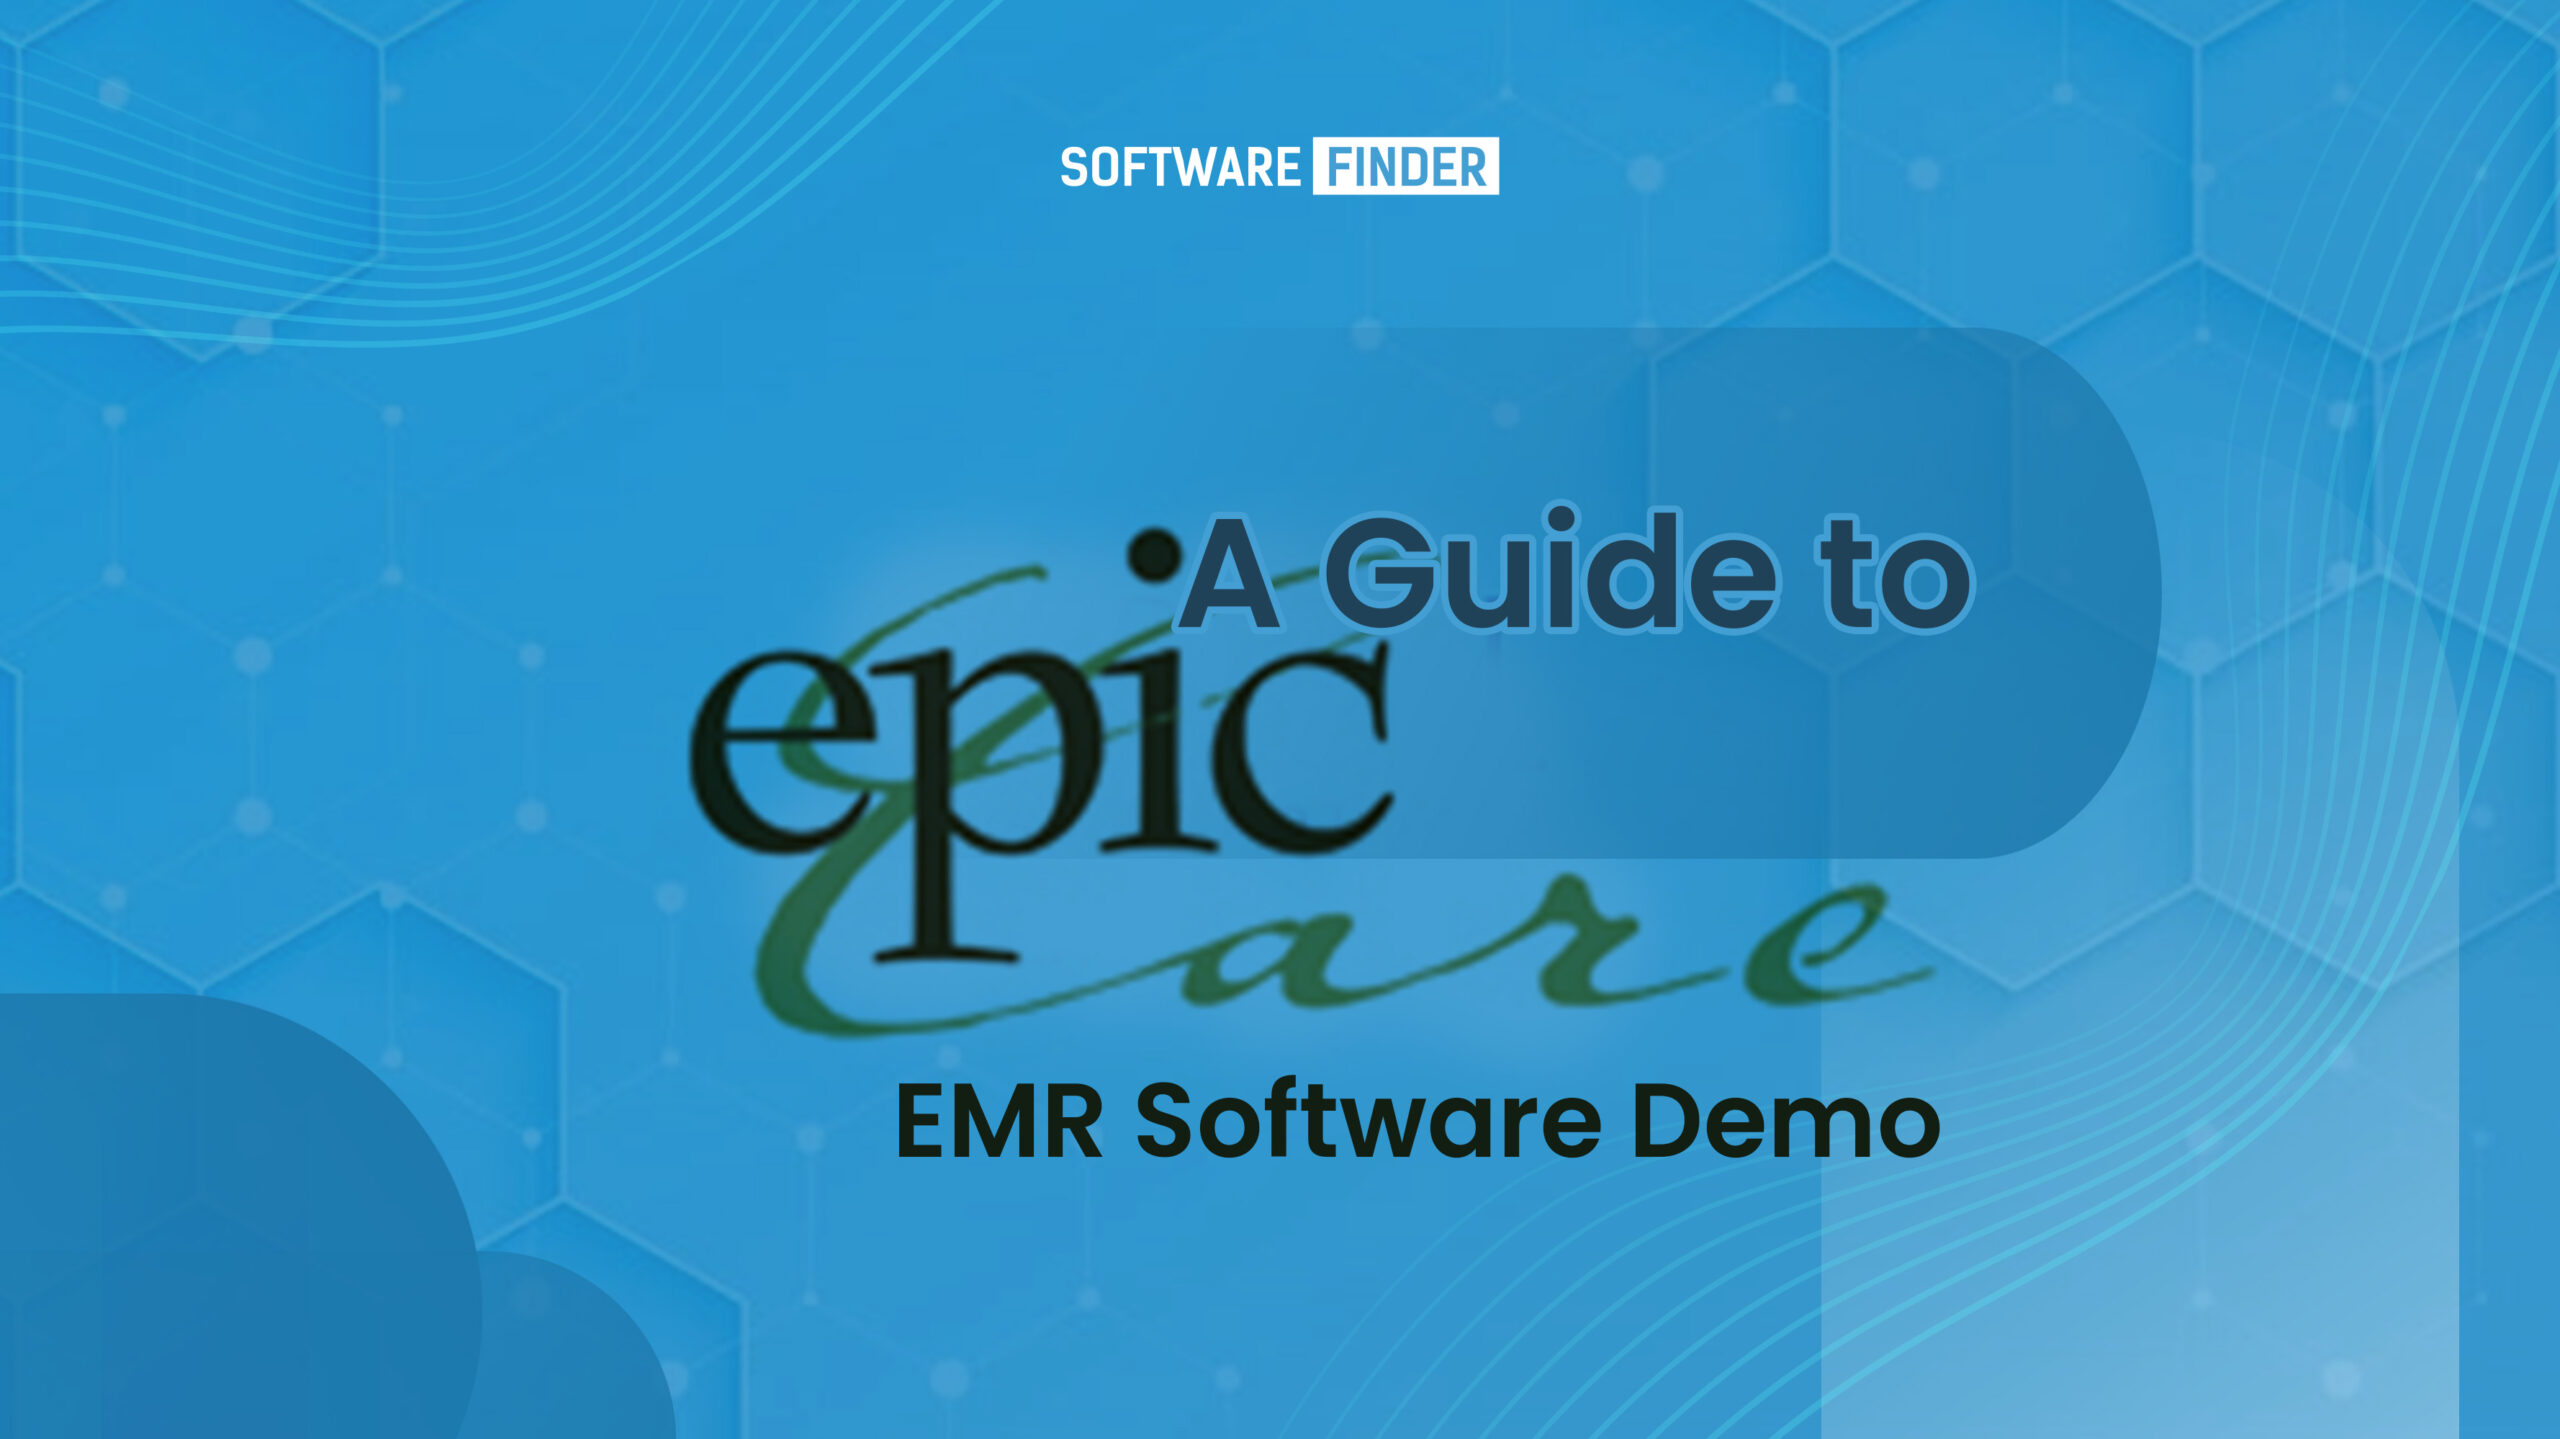 Epic EMR software demo